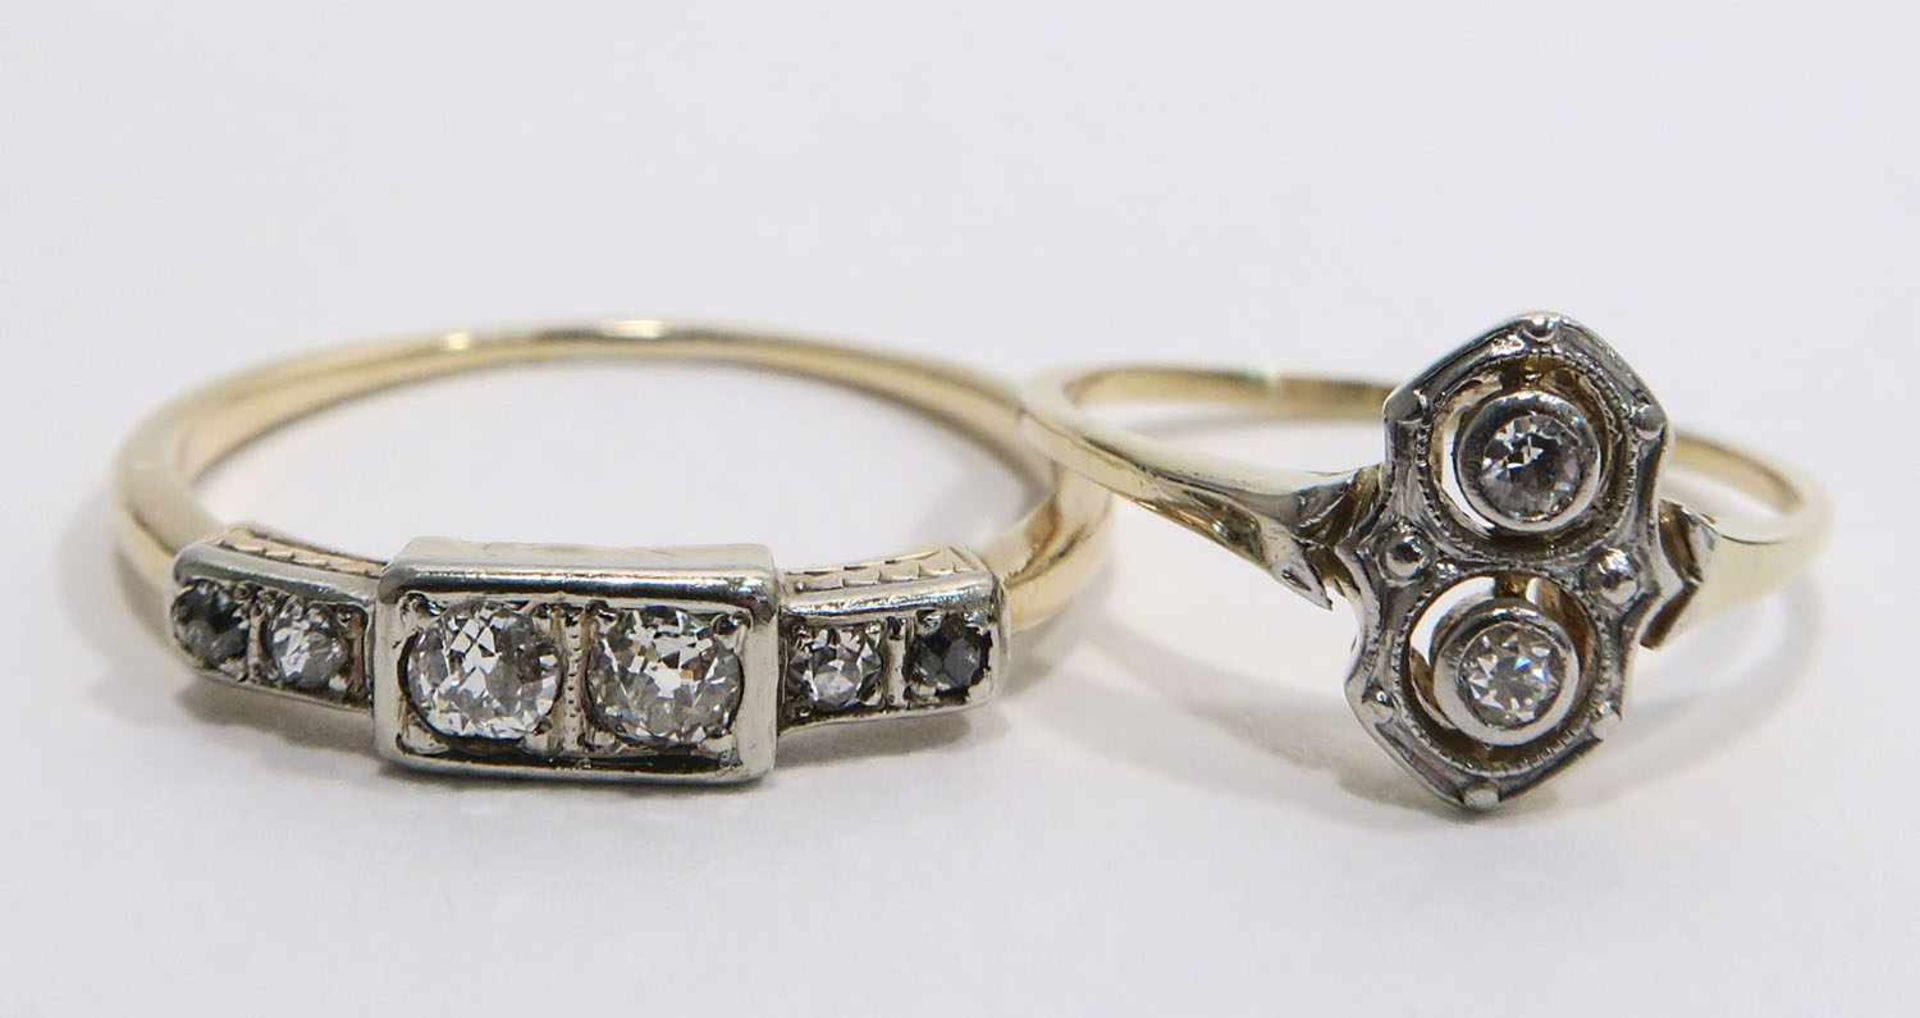 Zwei Ringe14 K GG. Mit zwei bzw. vier Kleindiamanten besetzt. Ringgröße 46 bzw. 56. Zus. 3 g